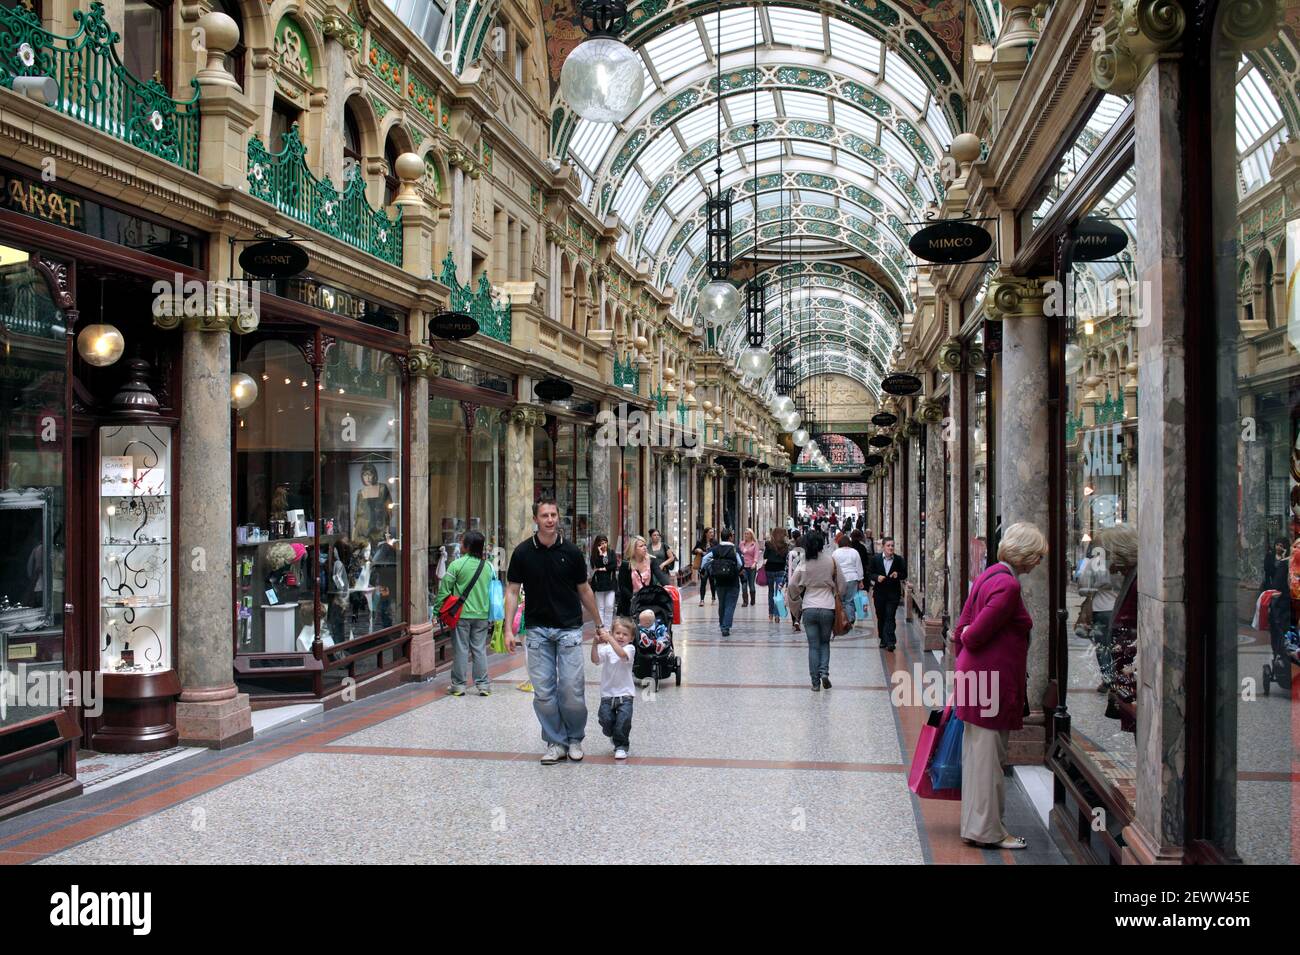 La County Arcade, nel quartiere Victoria, nel centro di Leeds. Una galleria di negozi coperta costruita nel 1900. Foto Stock